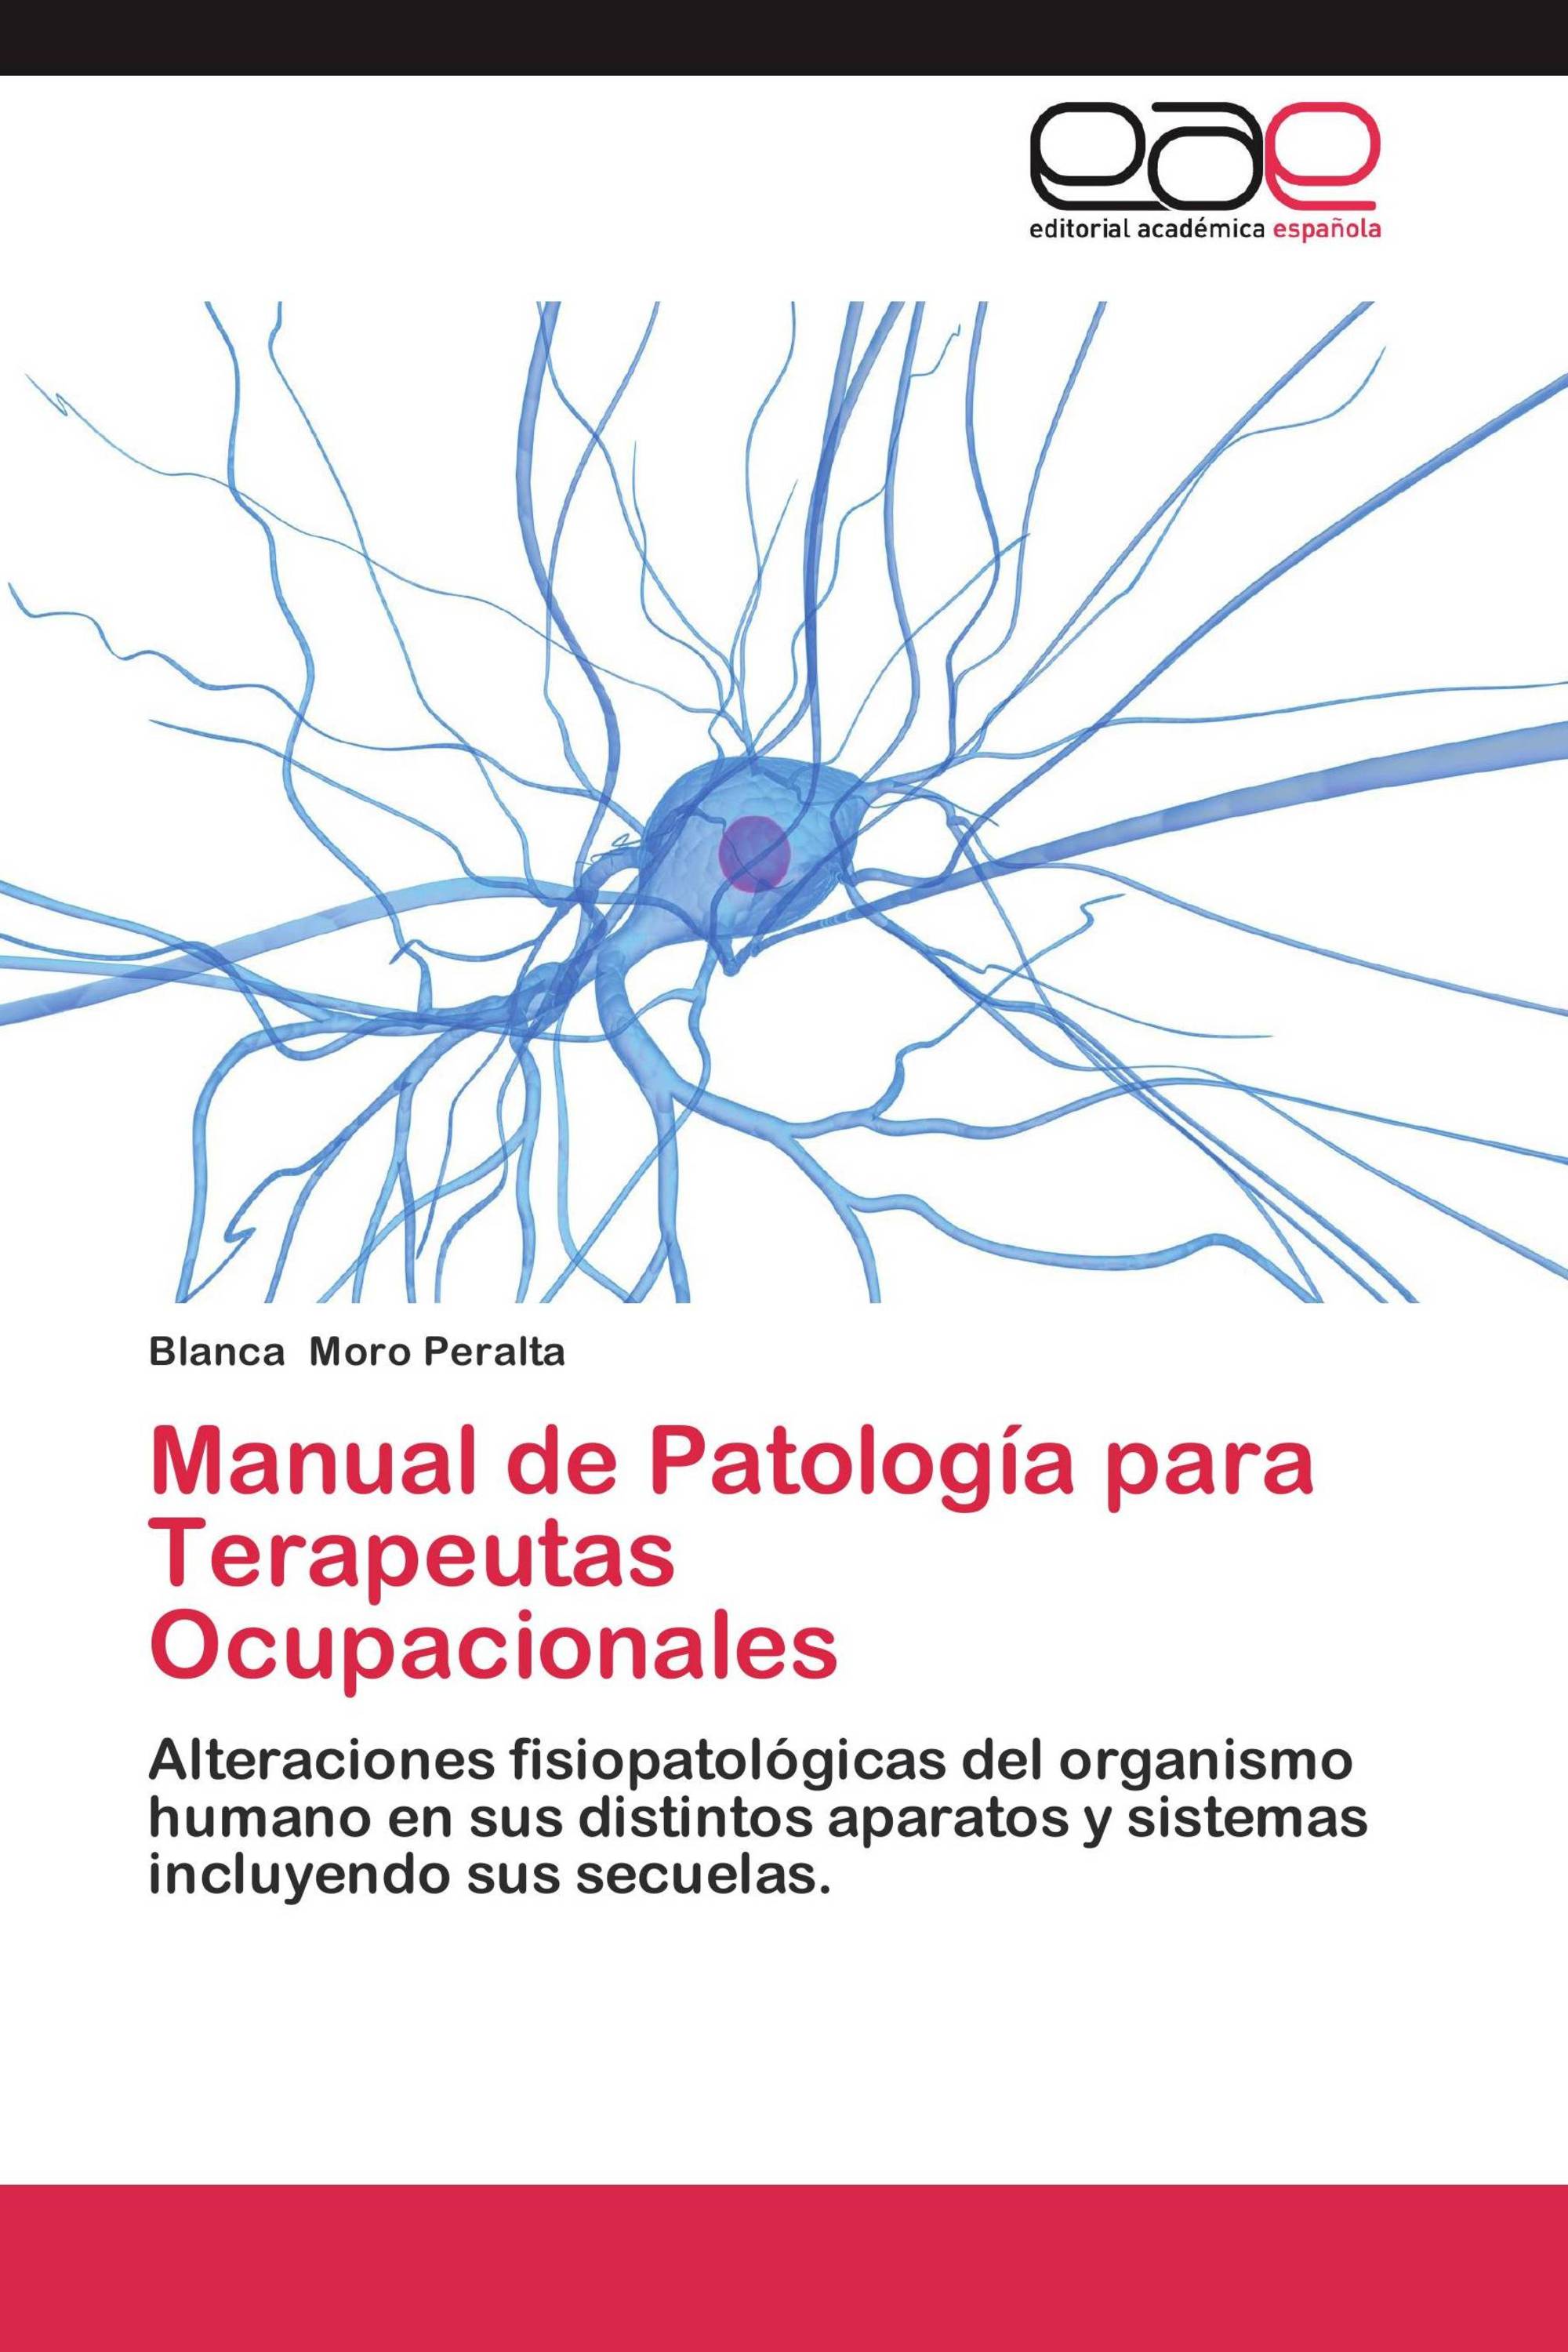 Imagen de portada del libro Manual de patología para terapeutas ocupacionales